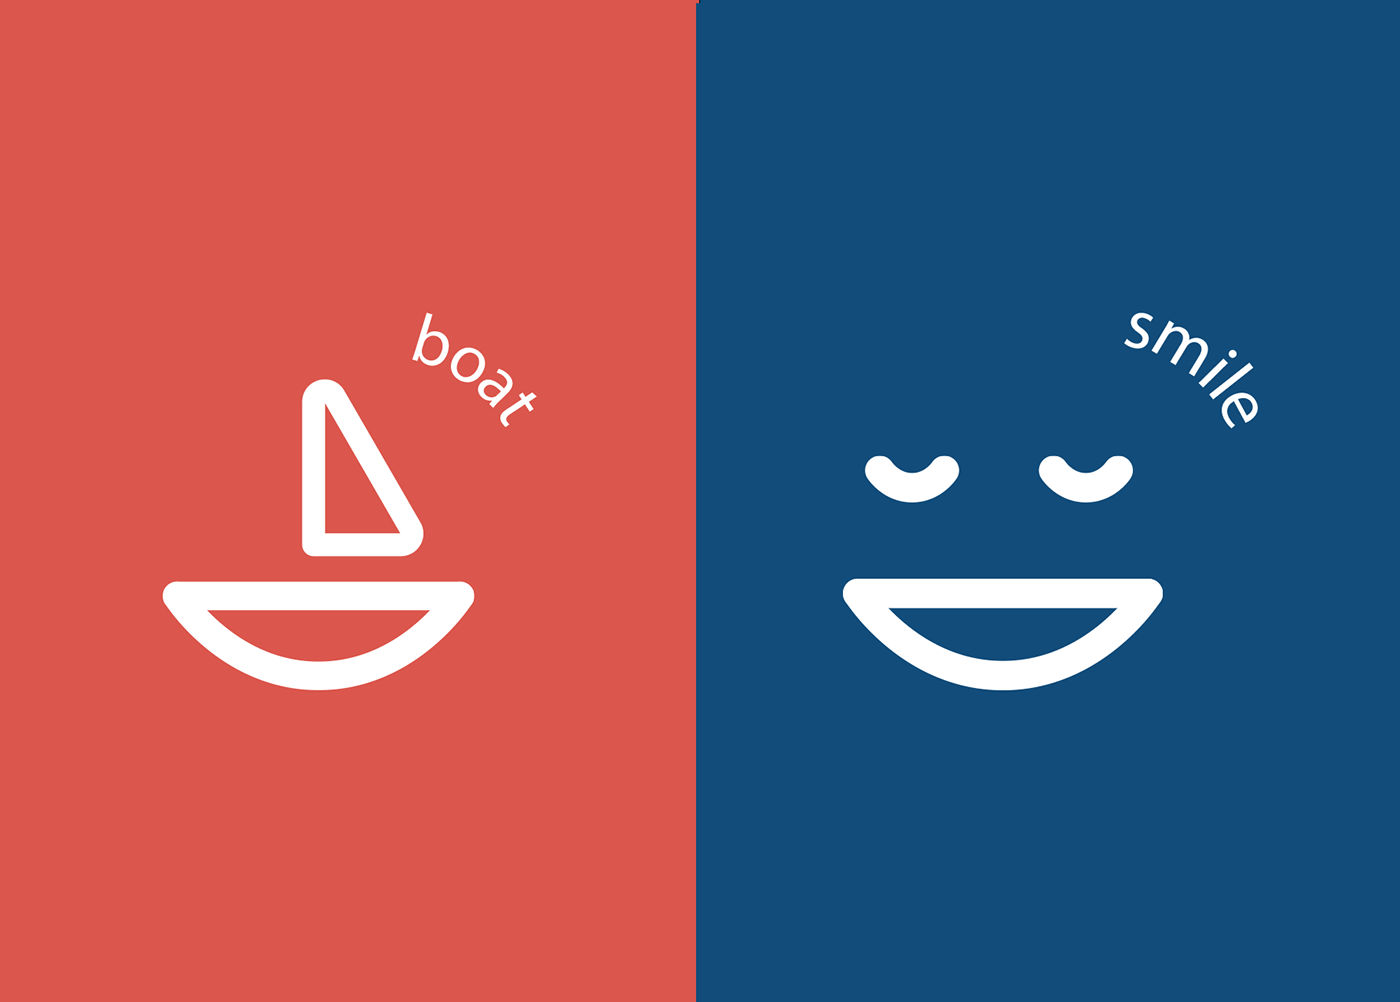 boat catamaran company design identidy logo